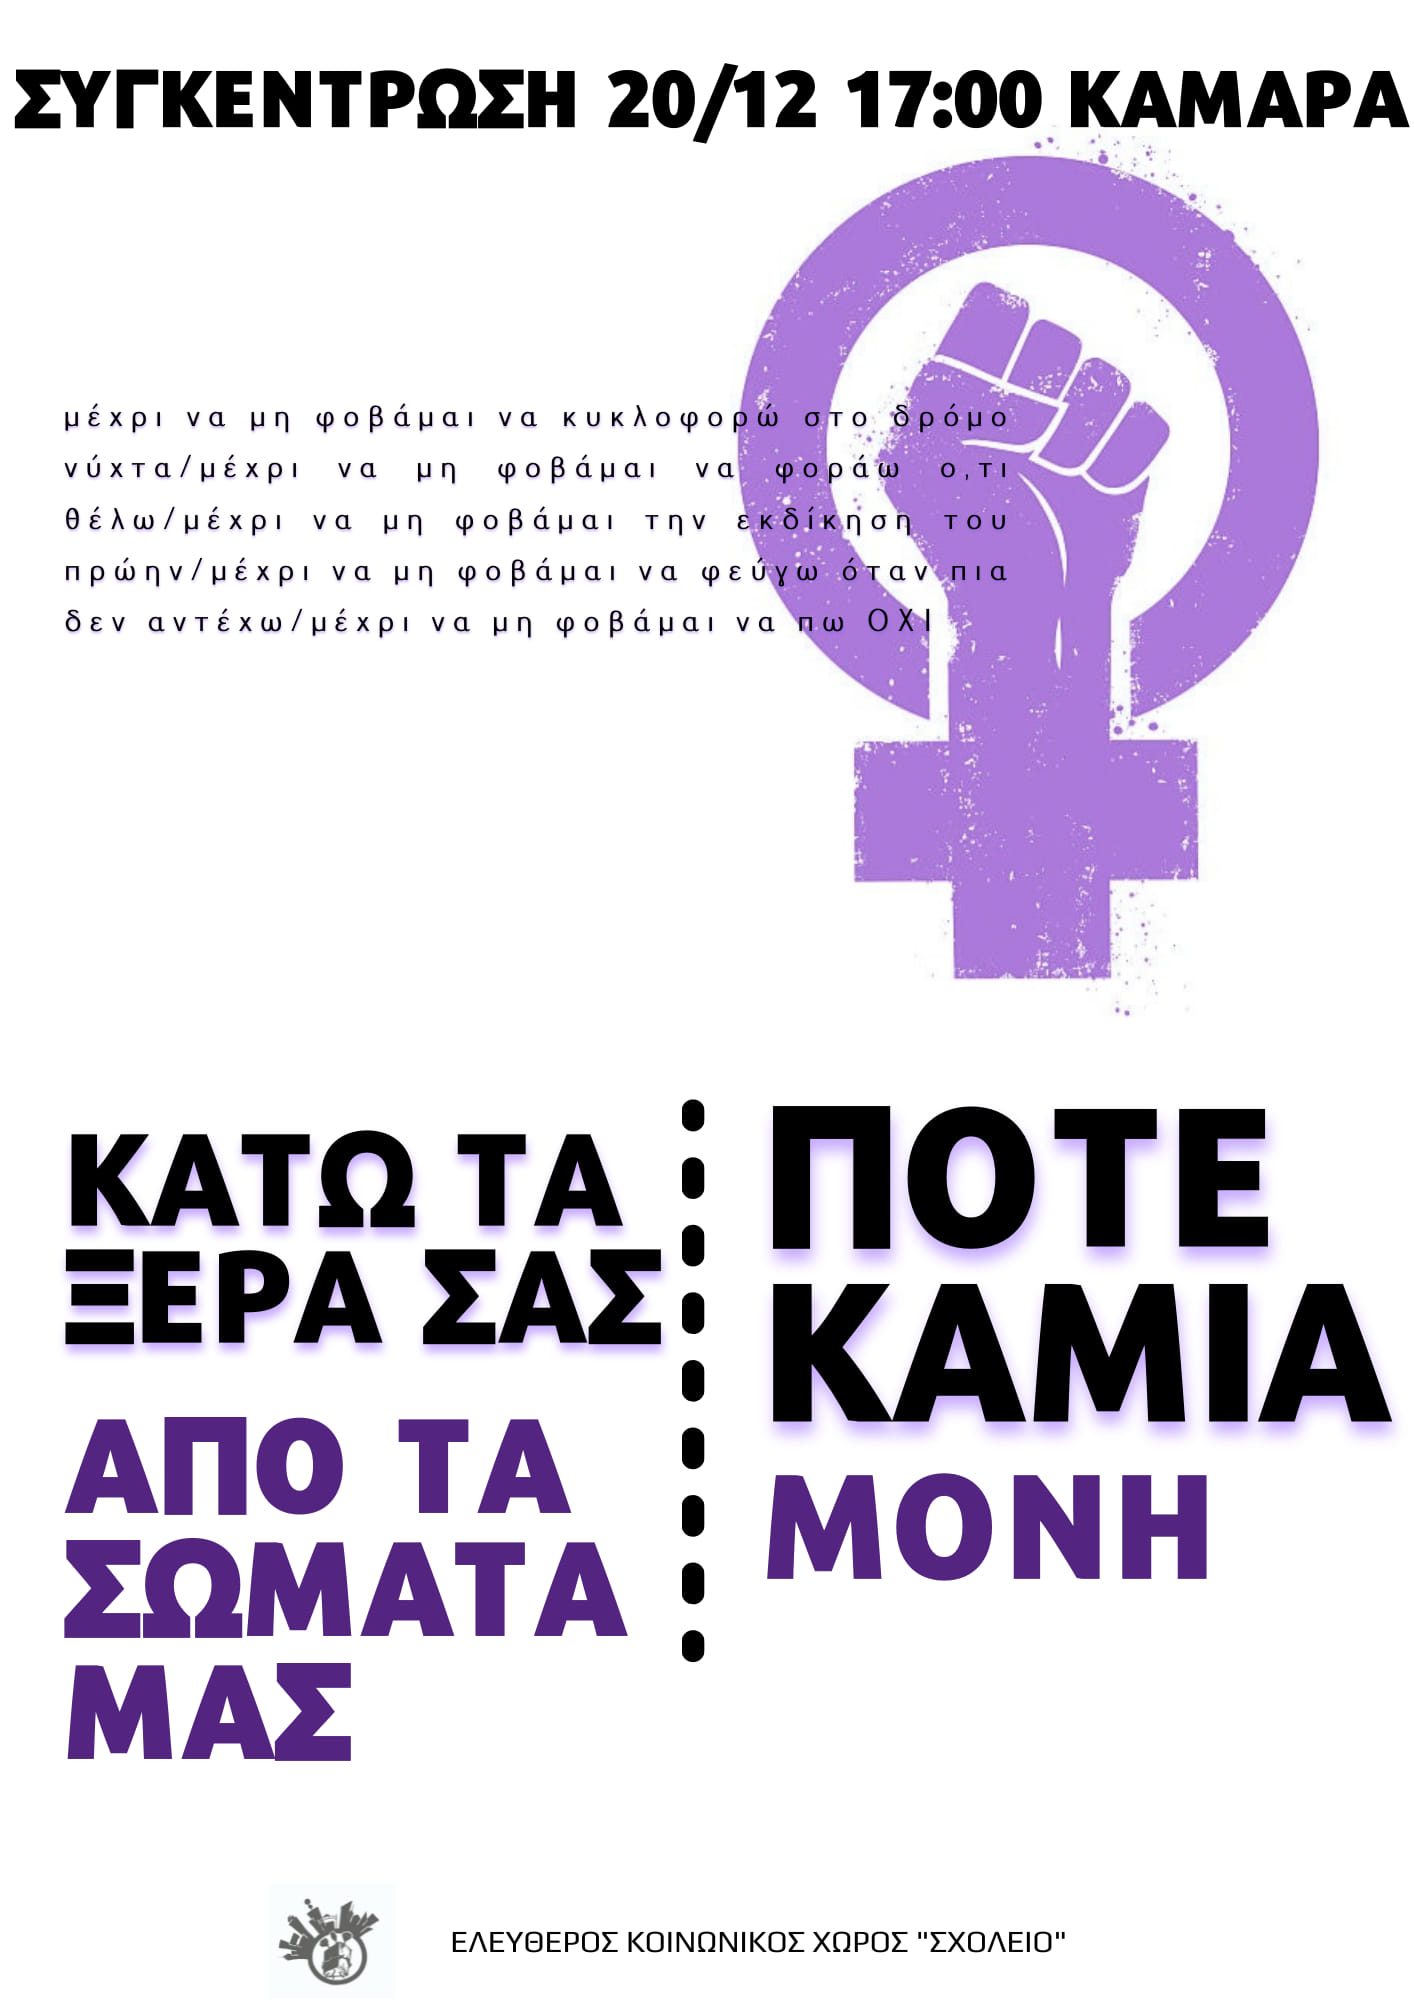 Θεσσαλονίκη | Συγκέντρωση ενάντια στην έμφυλη βία, Δευτέρα 20/12 στις 17:00, Καμάρα. Να γκρεμίσουμε ό,τι έχτισε η πατριαρχία [...] 